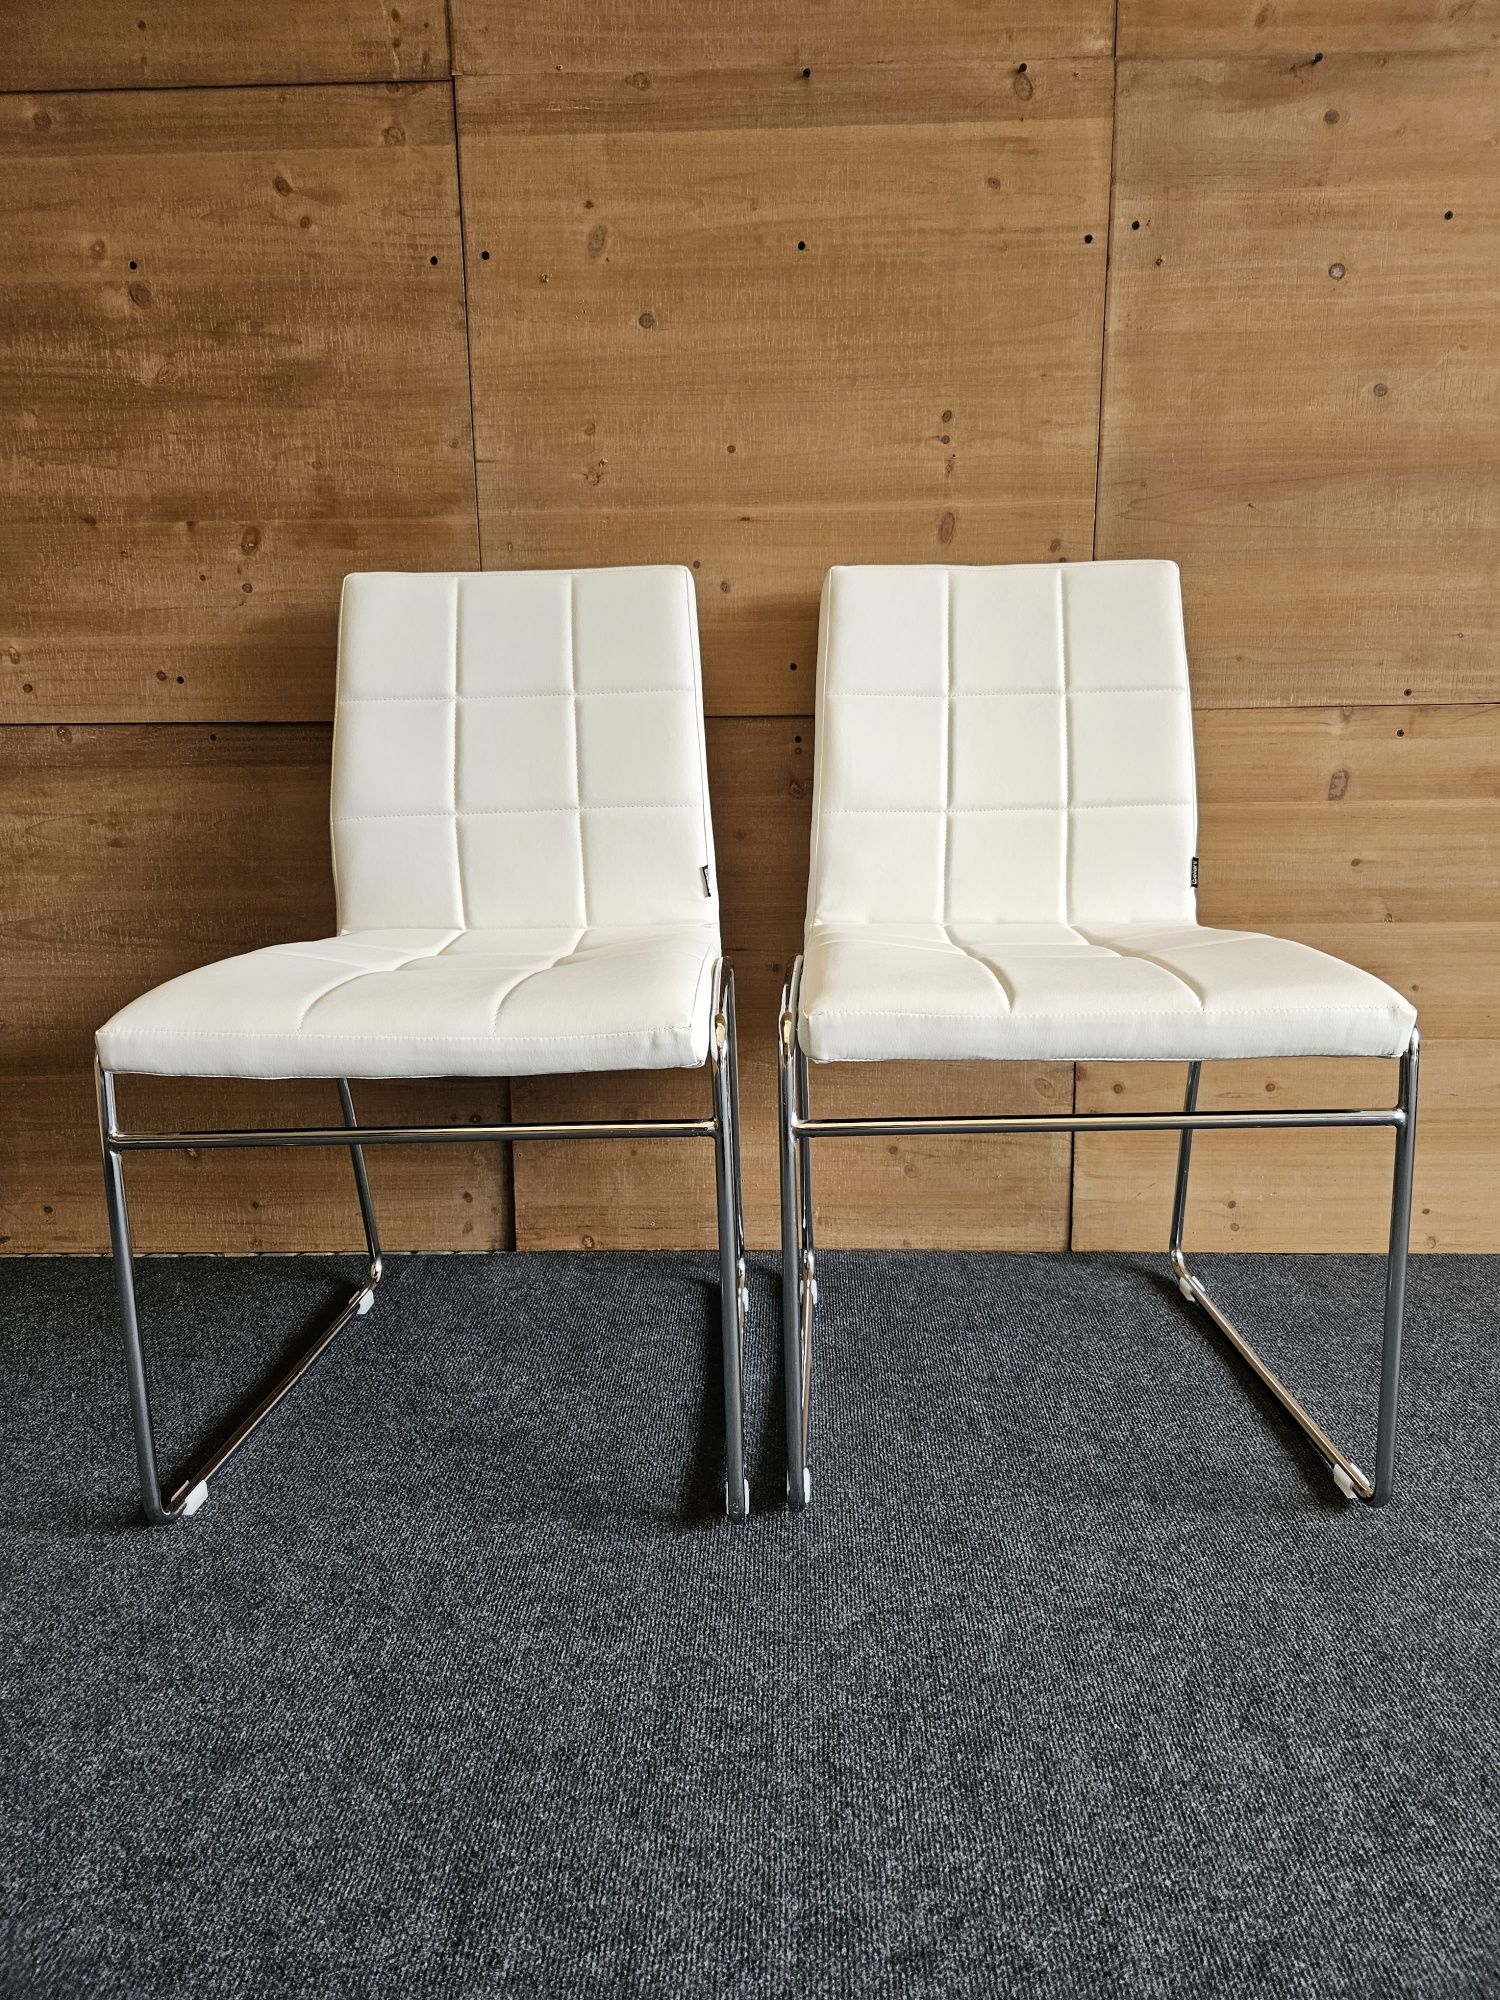 Dwa białe krzesła na chromowanych nogach